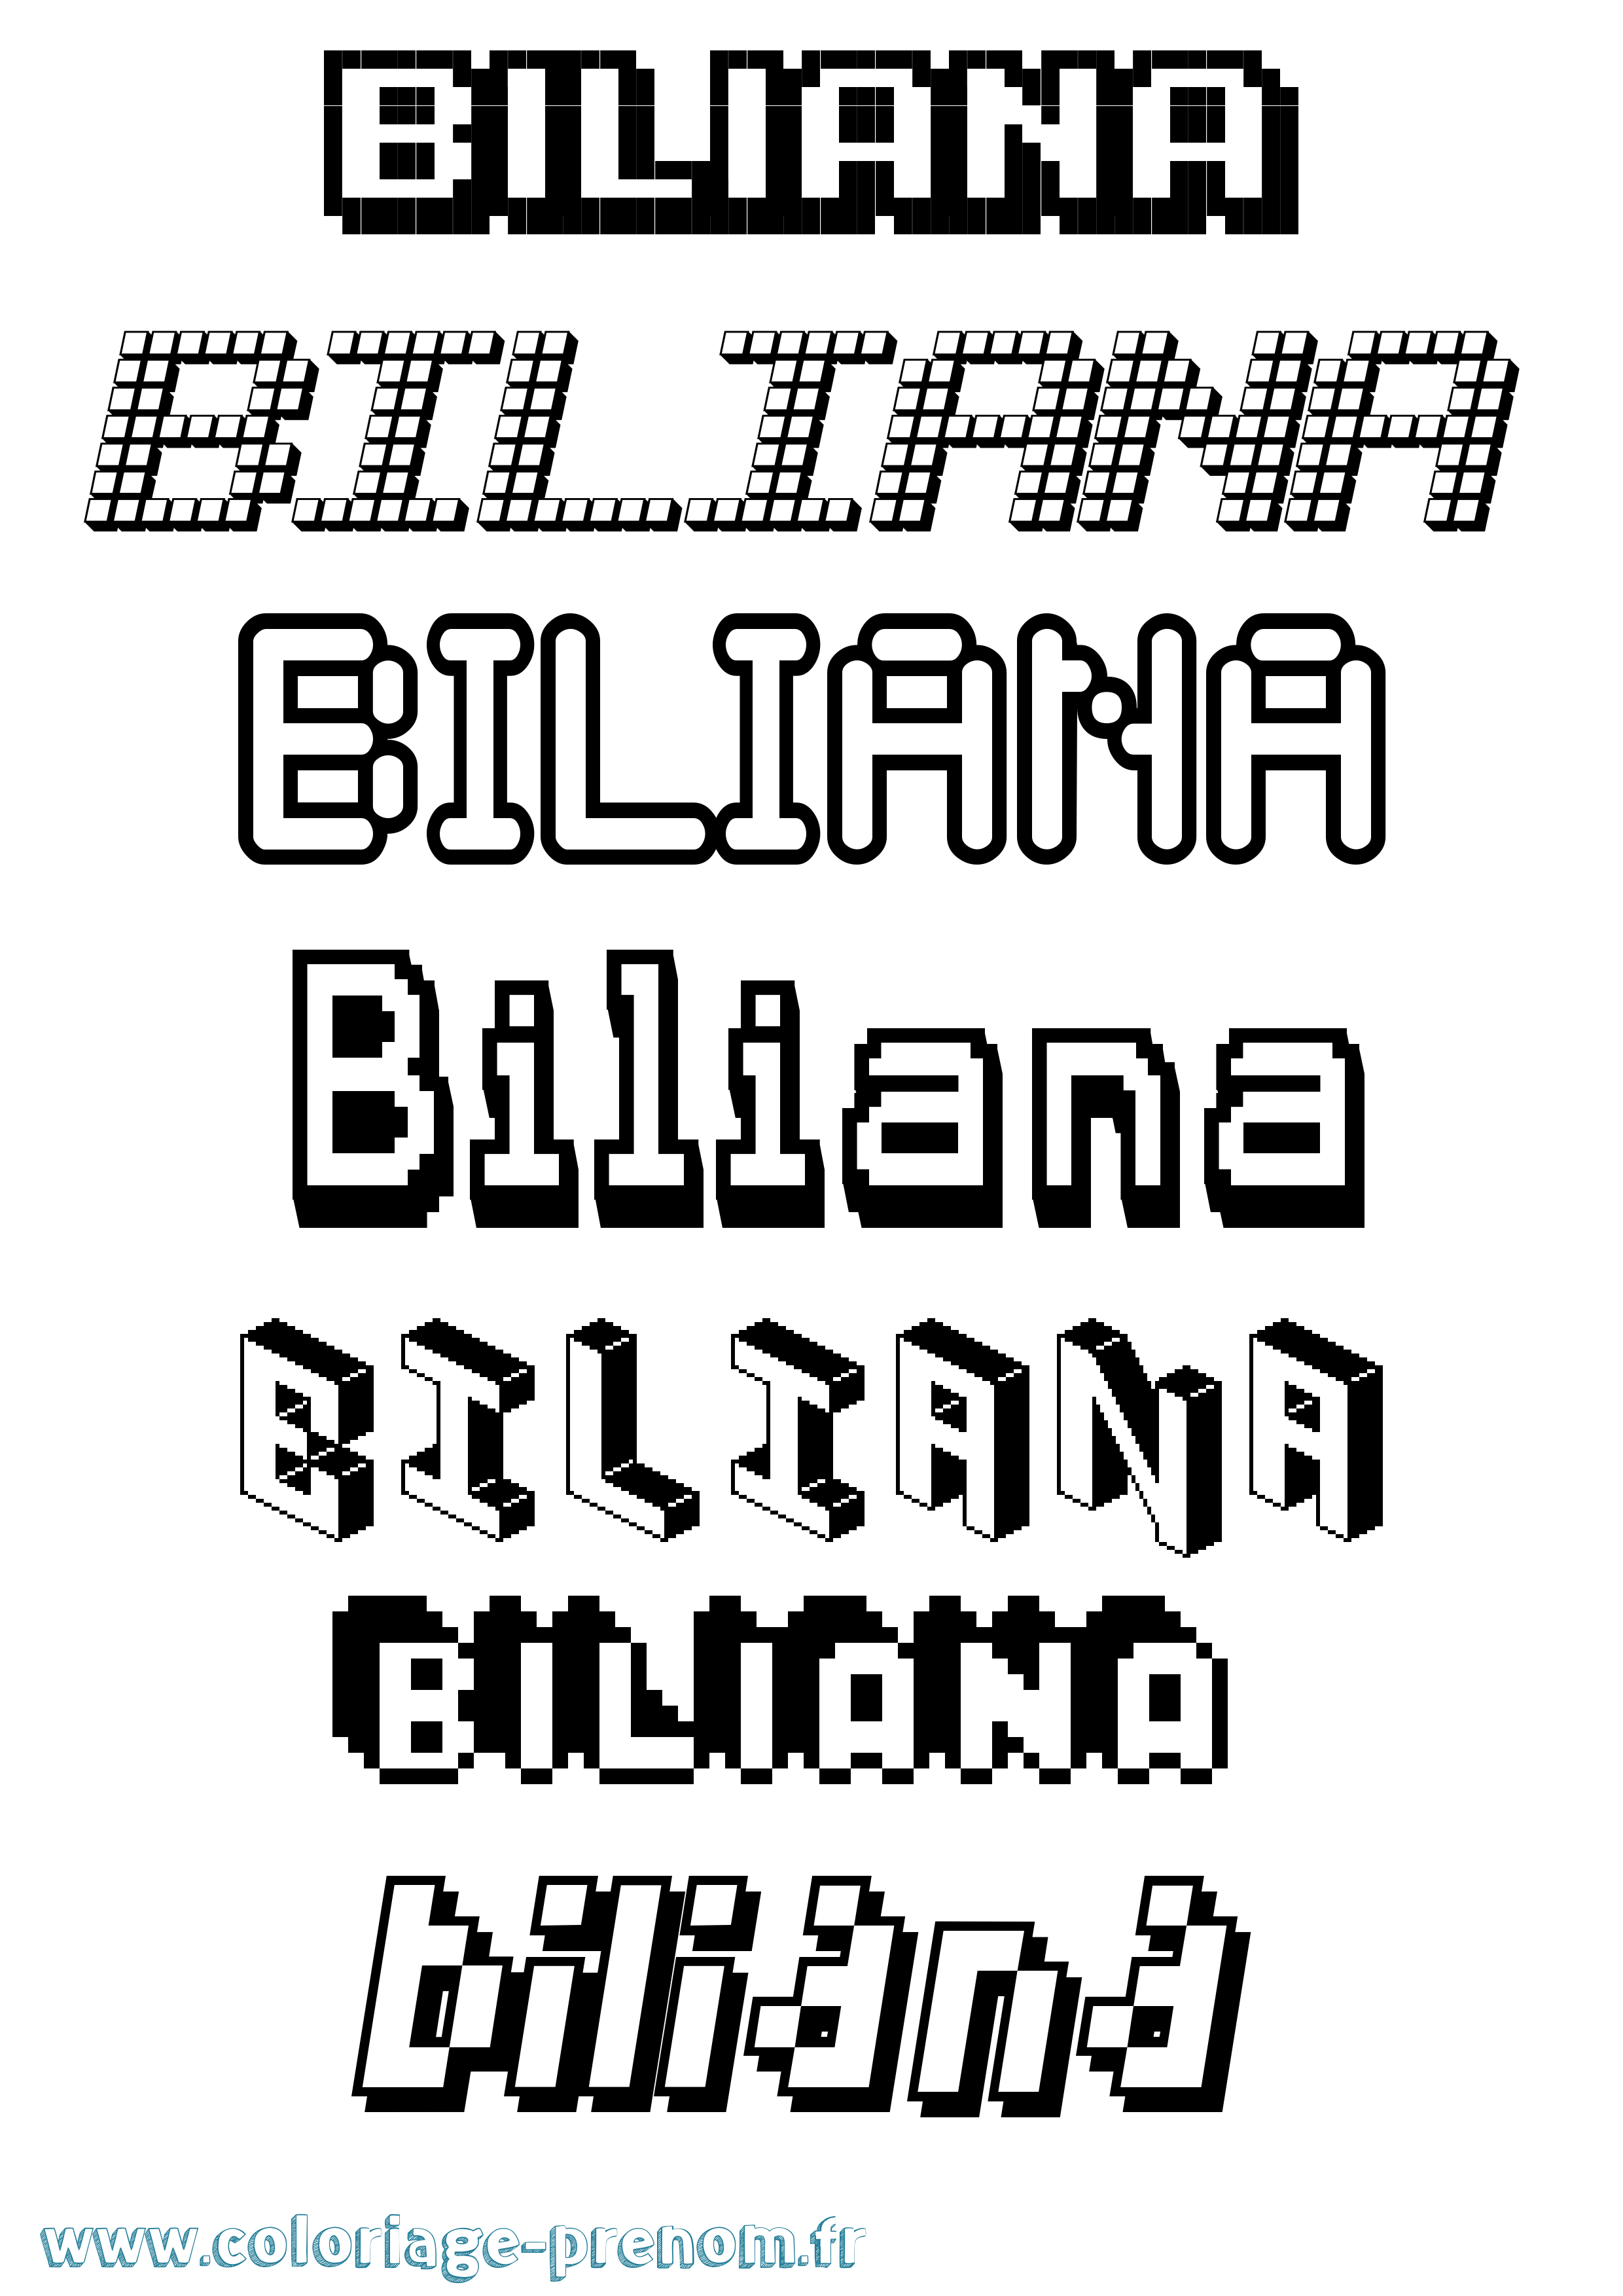 Coloriage prénom Biliana Pixel